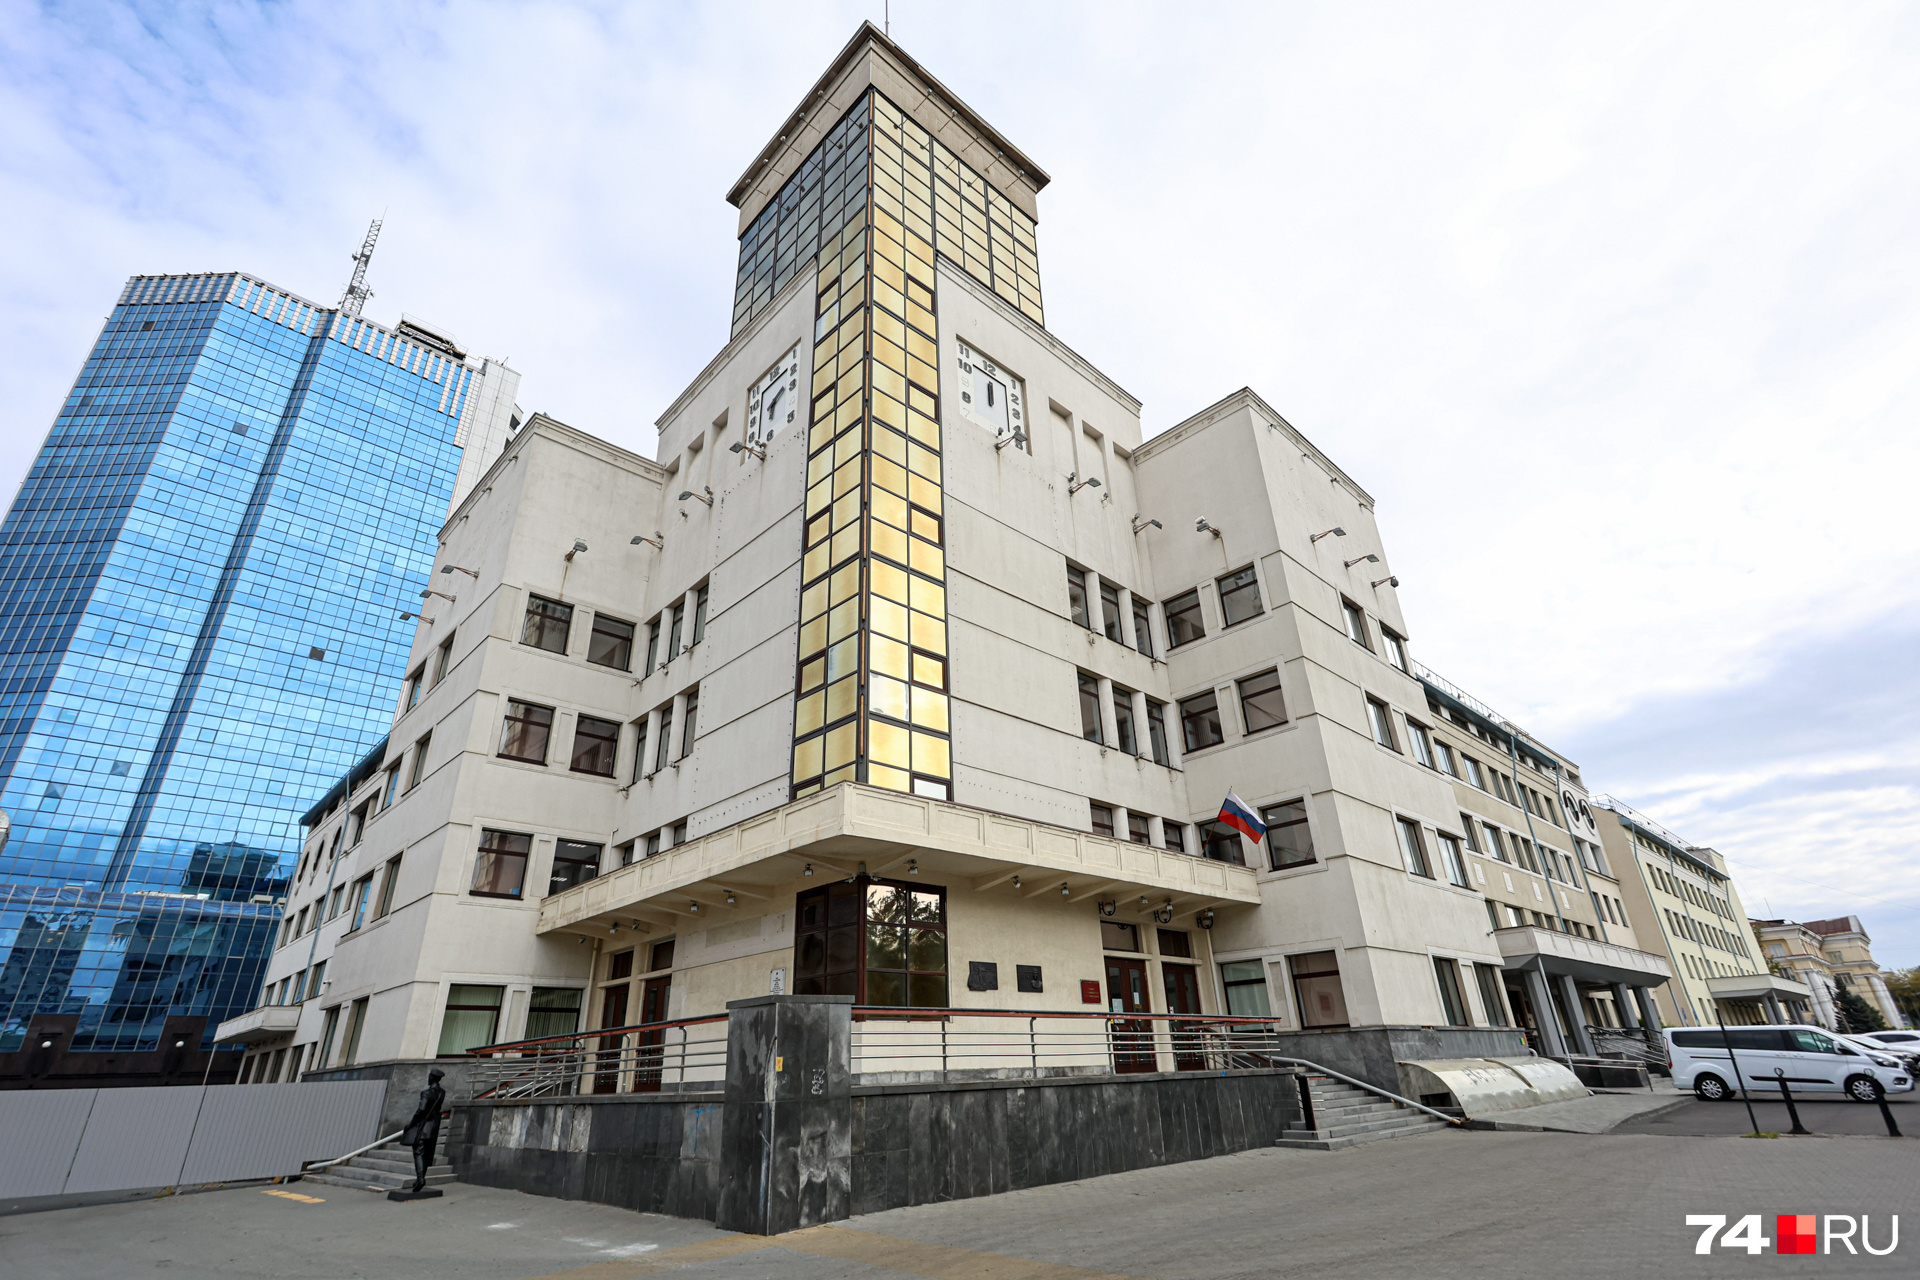 Предыдущие заседания проходили в Аргаяше, кассационную жалобу на приговор рассмотрели в Челябинске